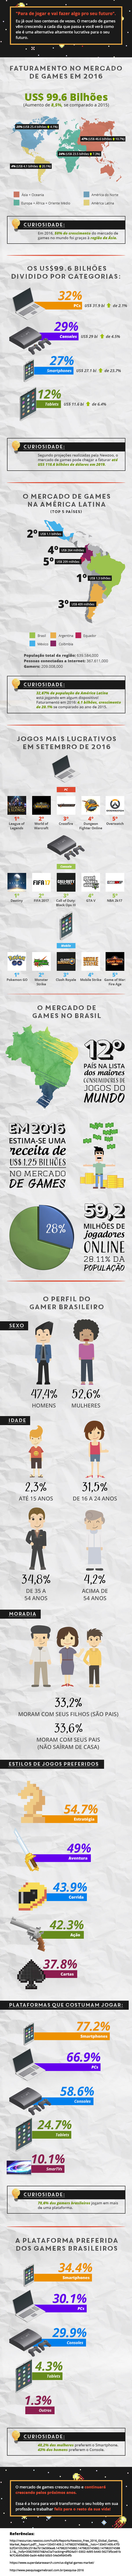 Infográfico: O Mercado de Jogos no Brasil - Crescimento fantástico em meio à crise